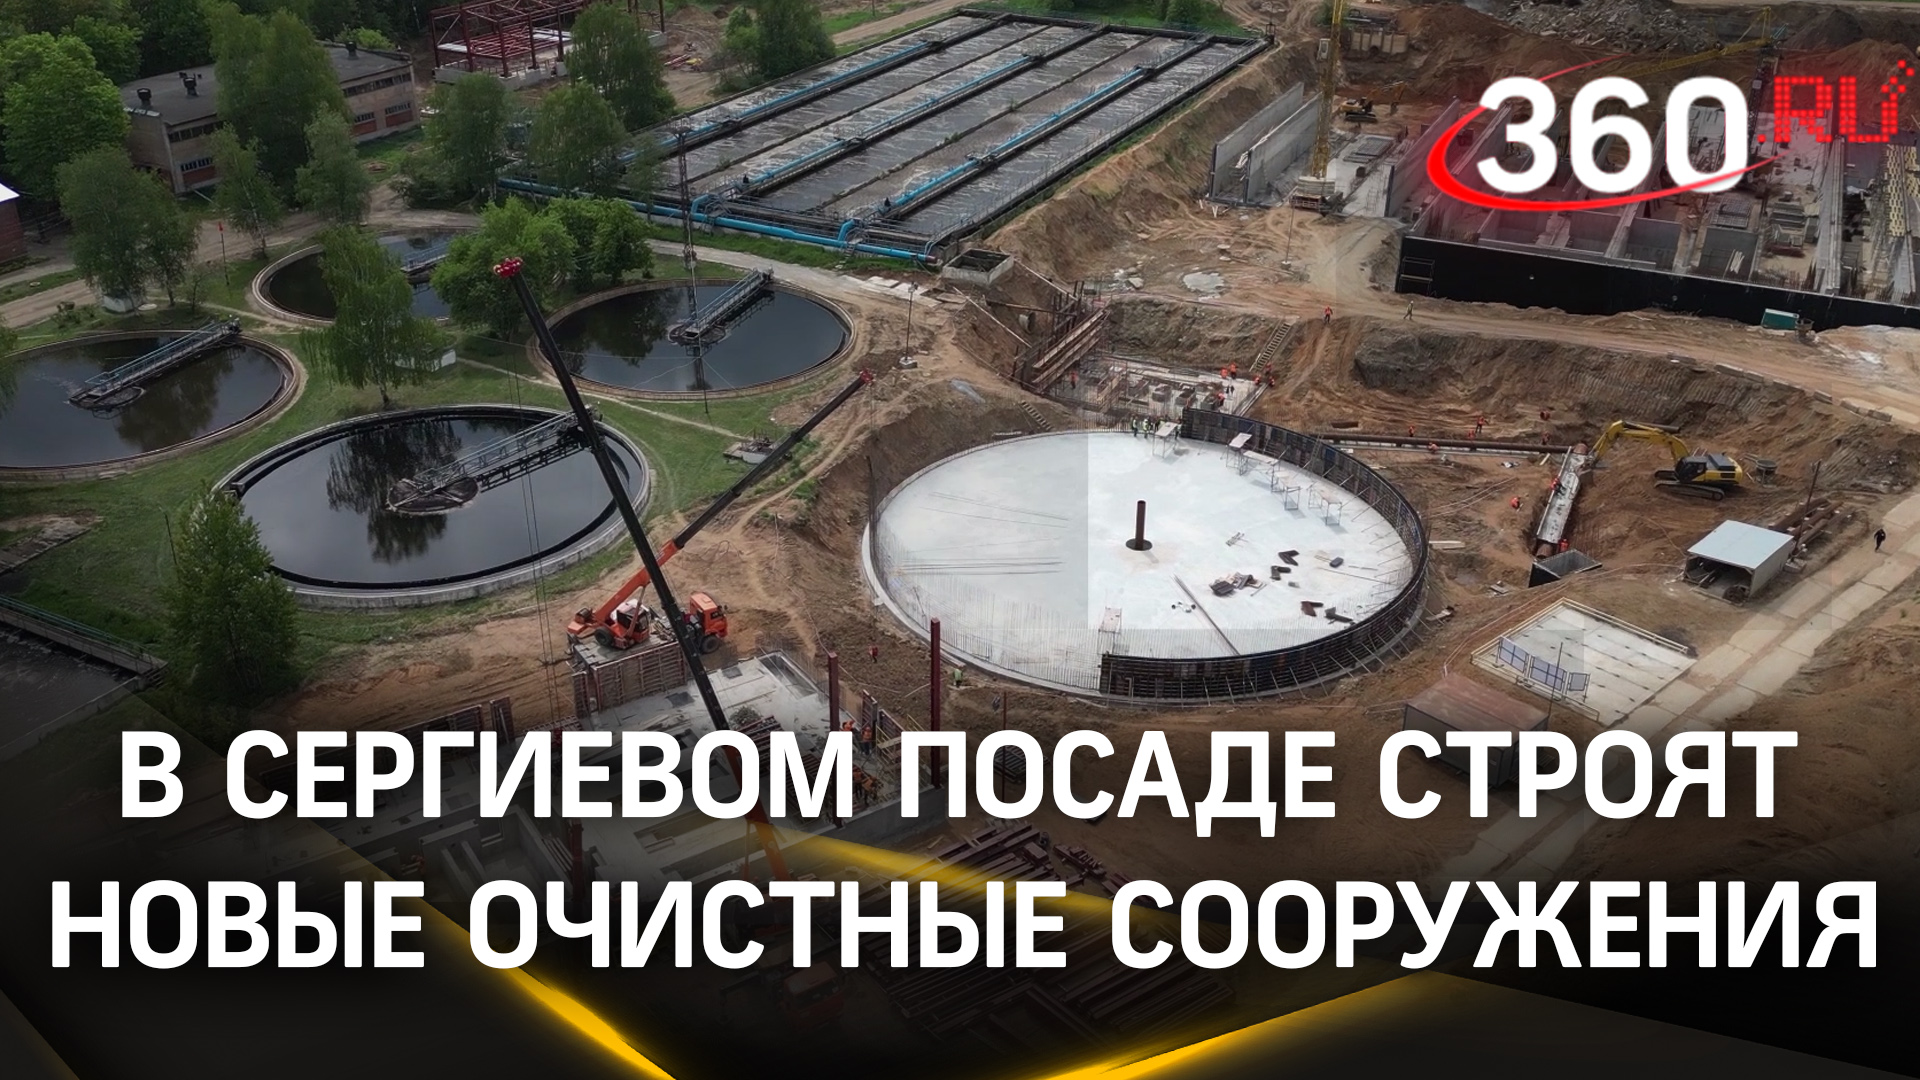 Обеззараживают воду и обрабатывают осадки: в Сергиевом Посаде строят новые очистные сооружения